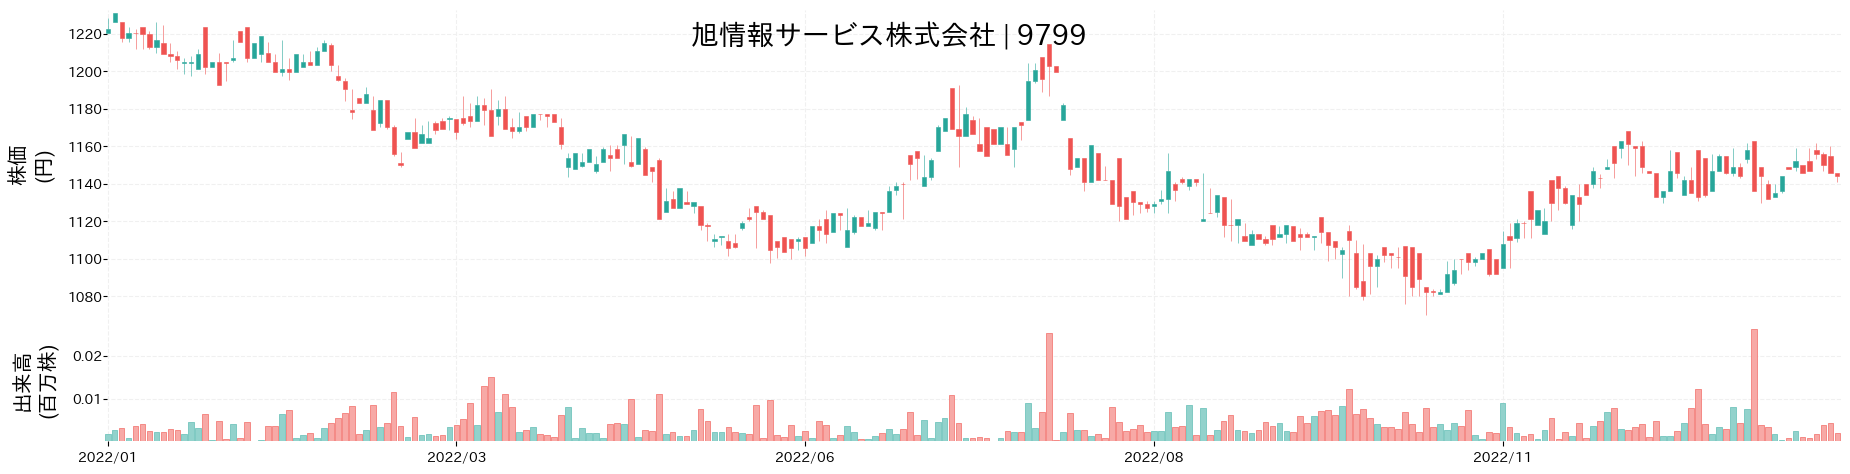 旭情報サービスの株価推移(2022)